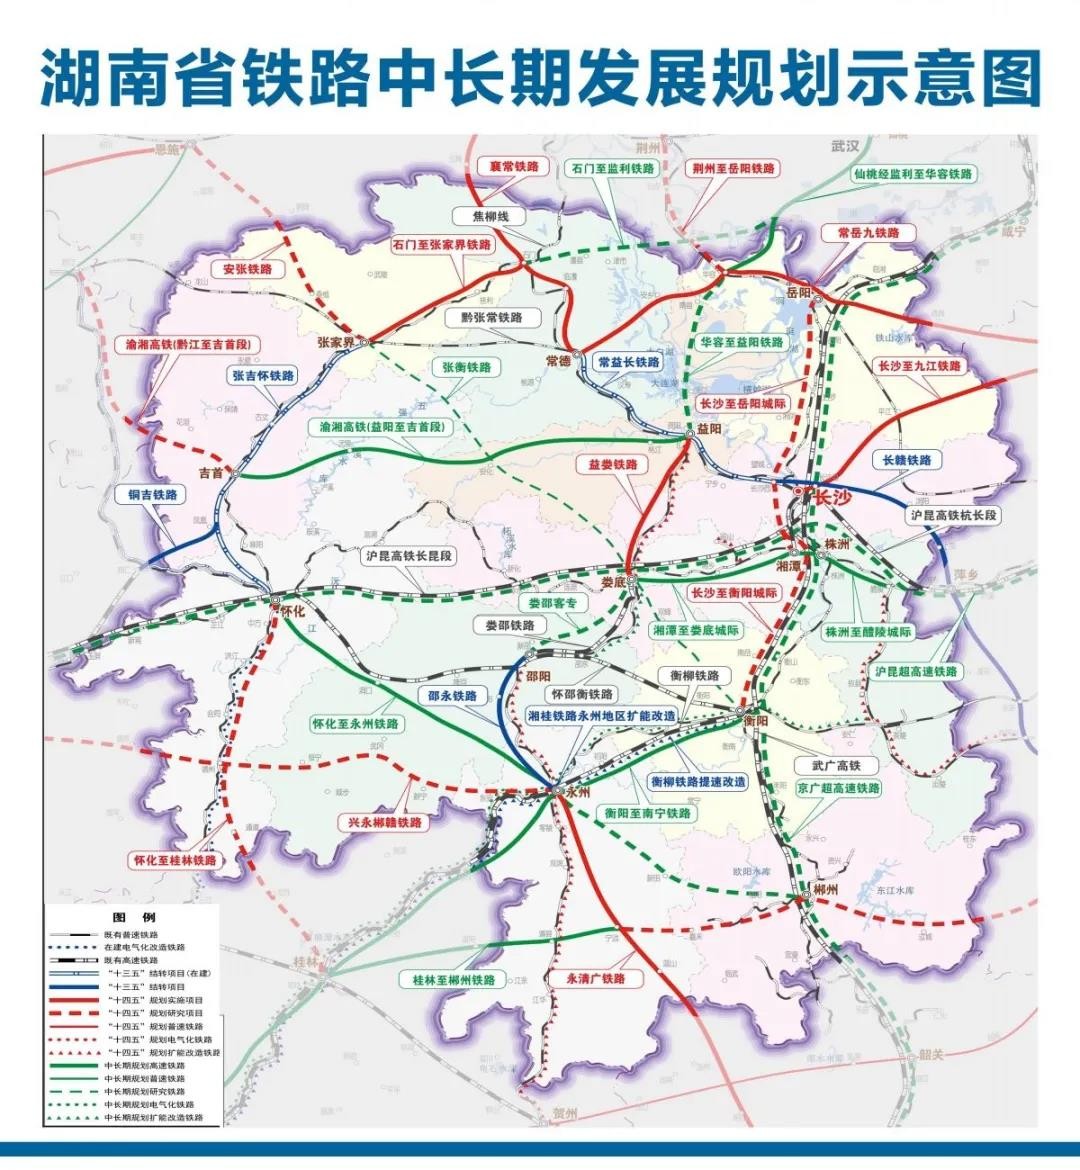 针对长沙市近中期铁路线路,包括渝长广联络线,云贵厦联络线,长岳城际